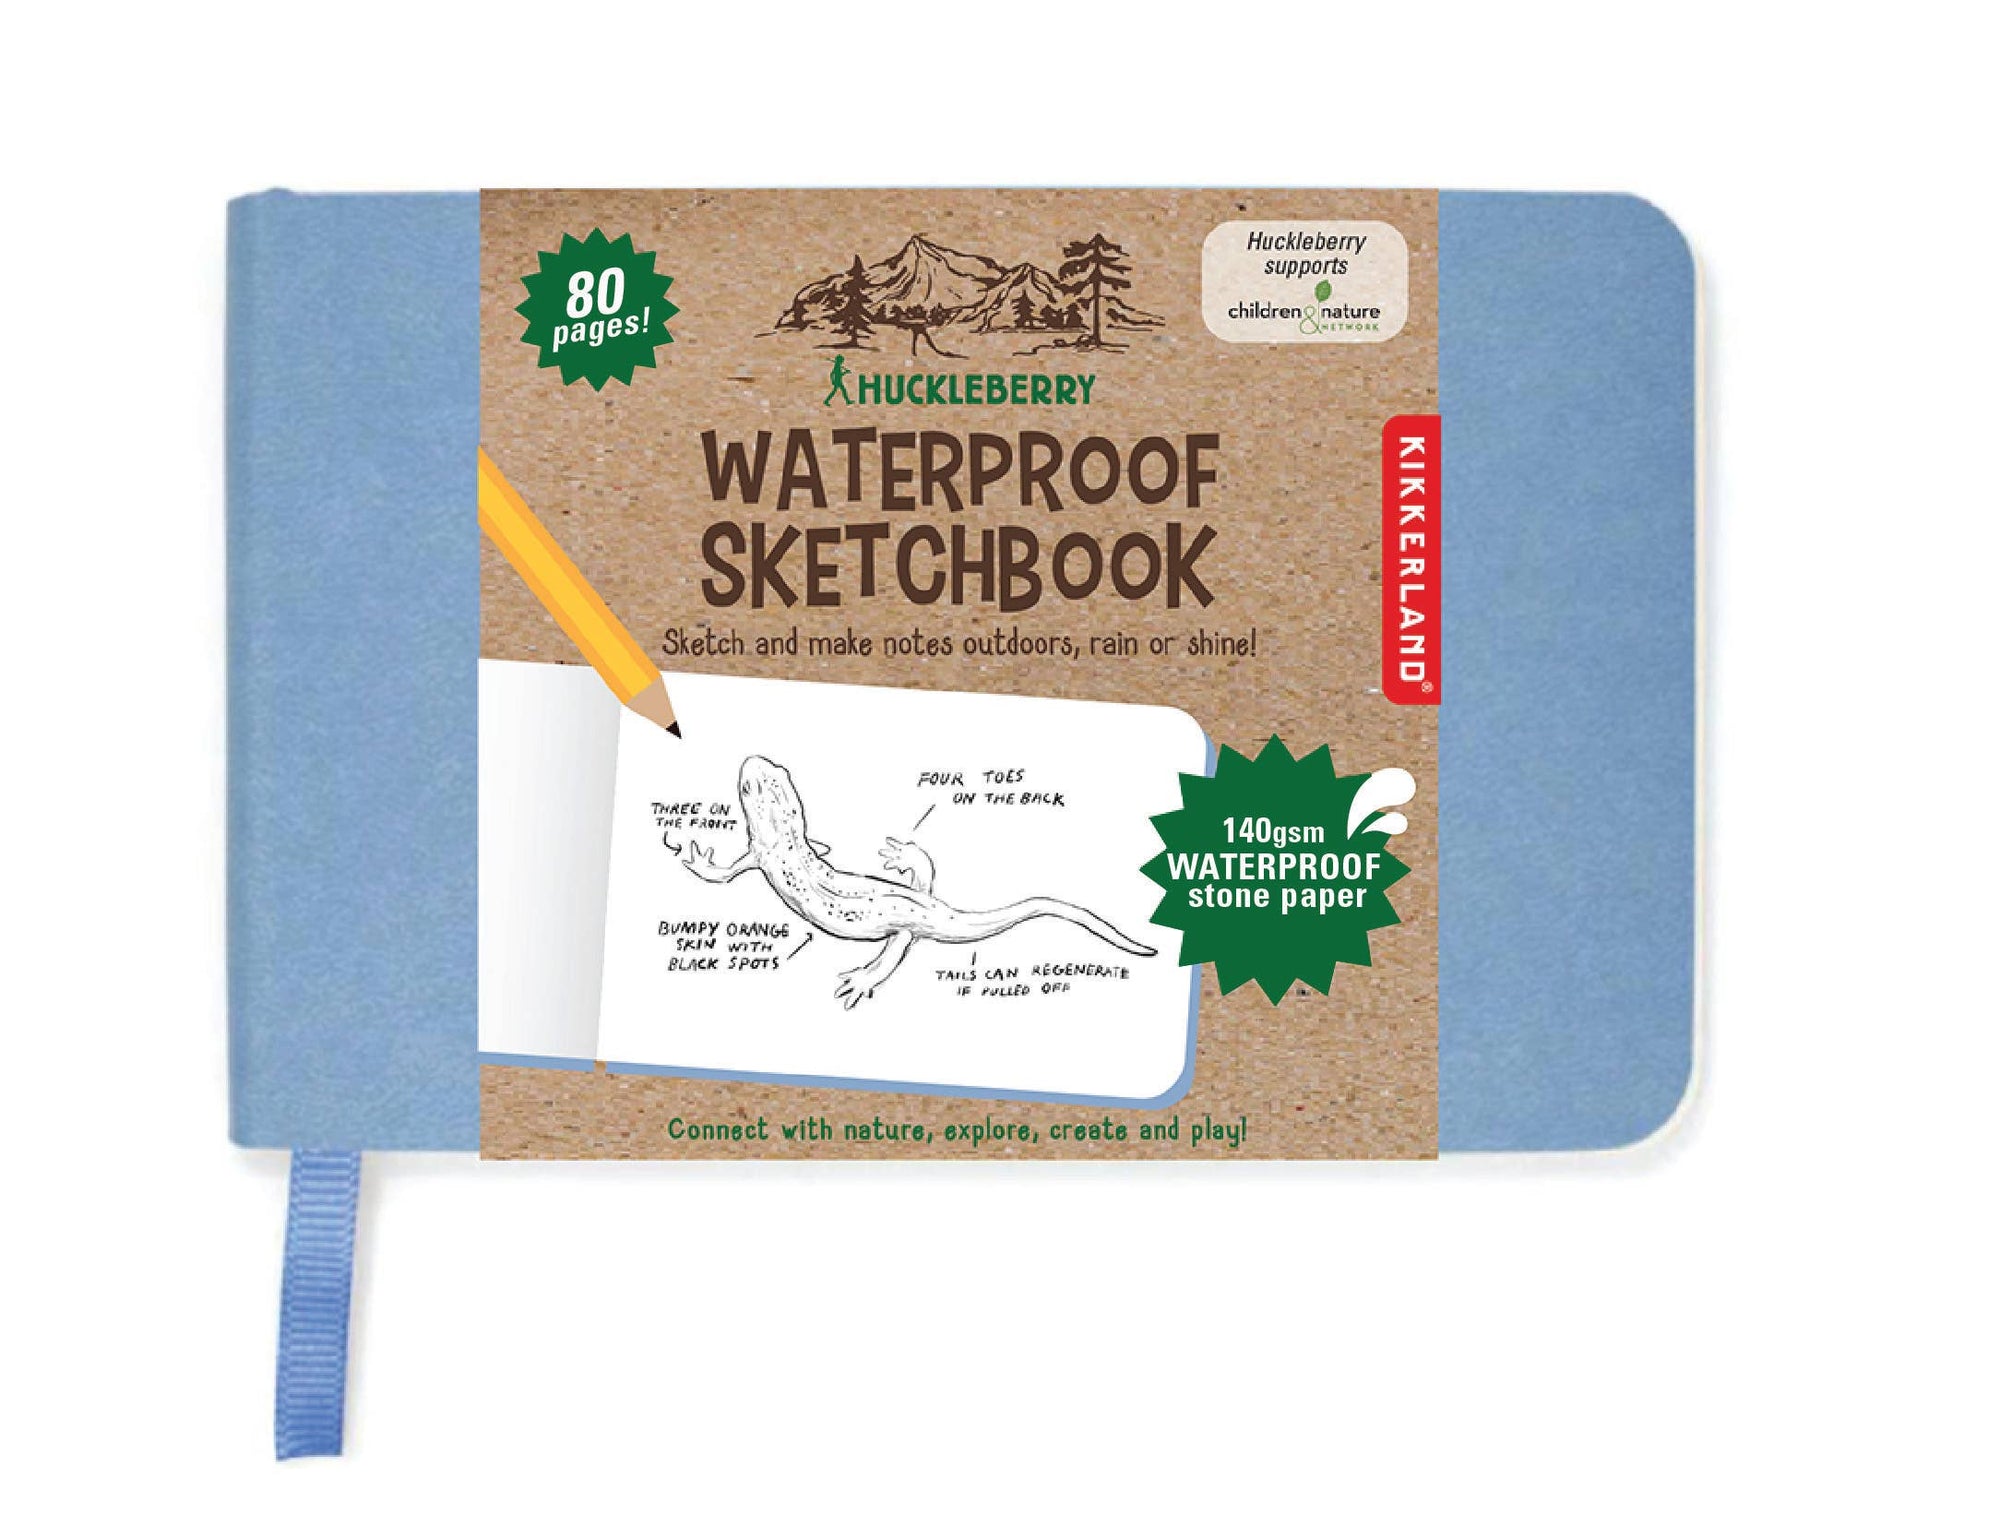 Waterproof Sketchbook